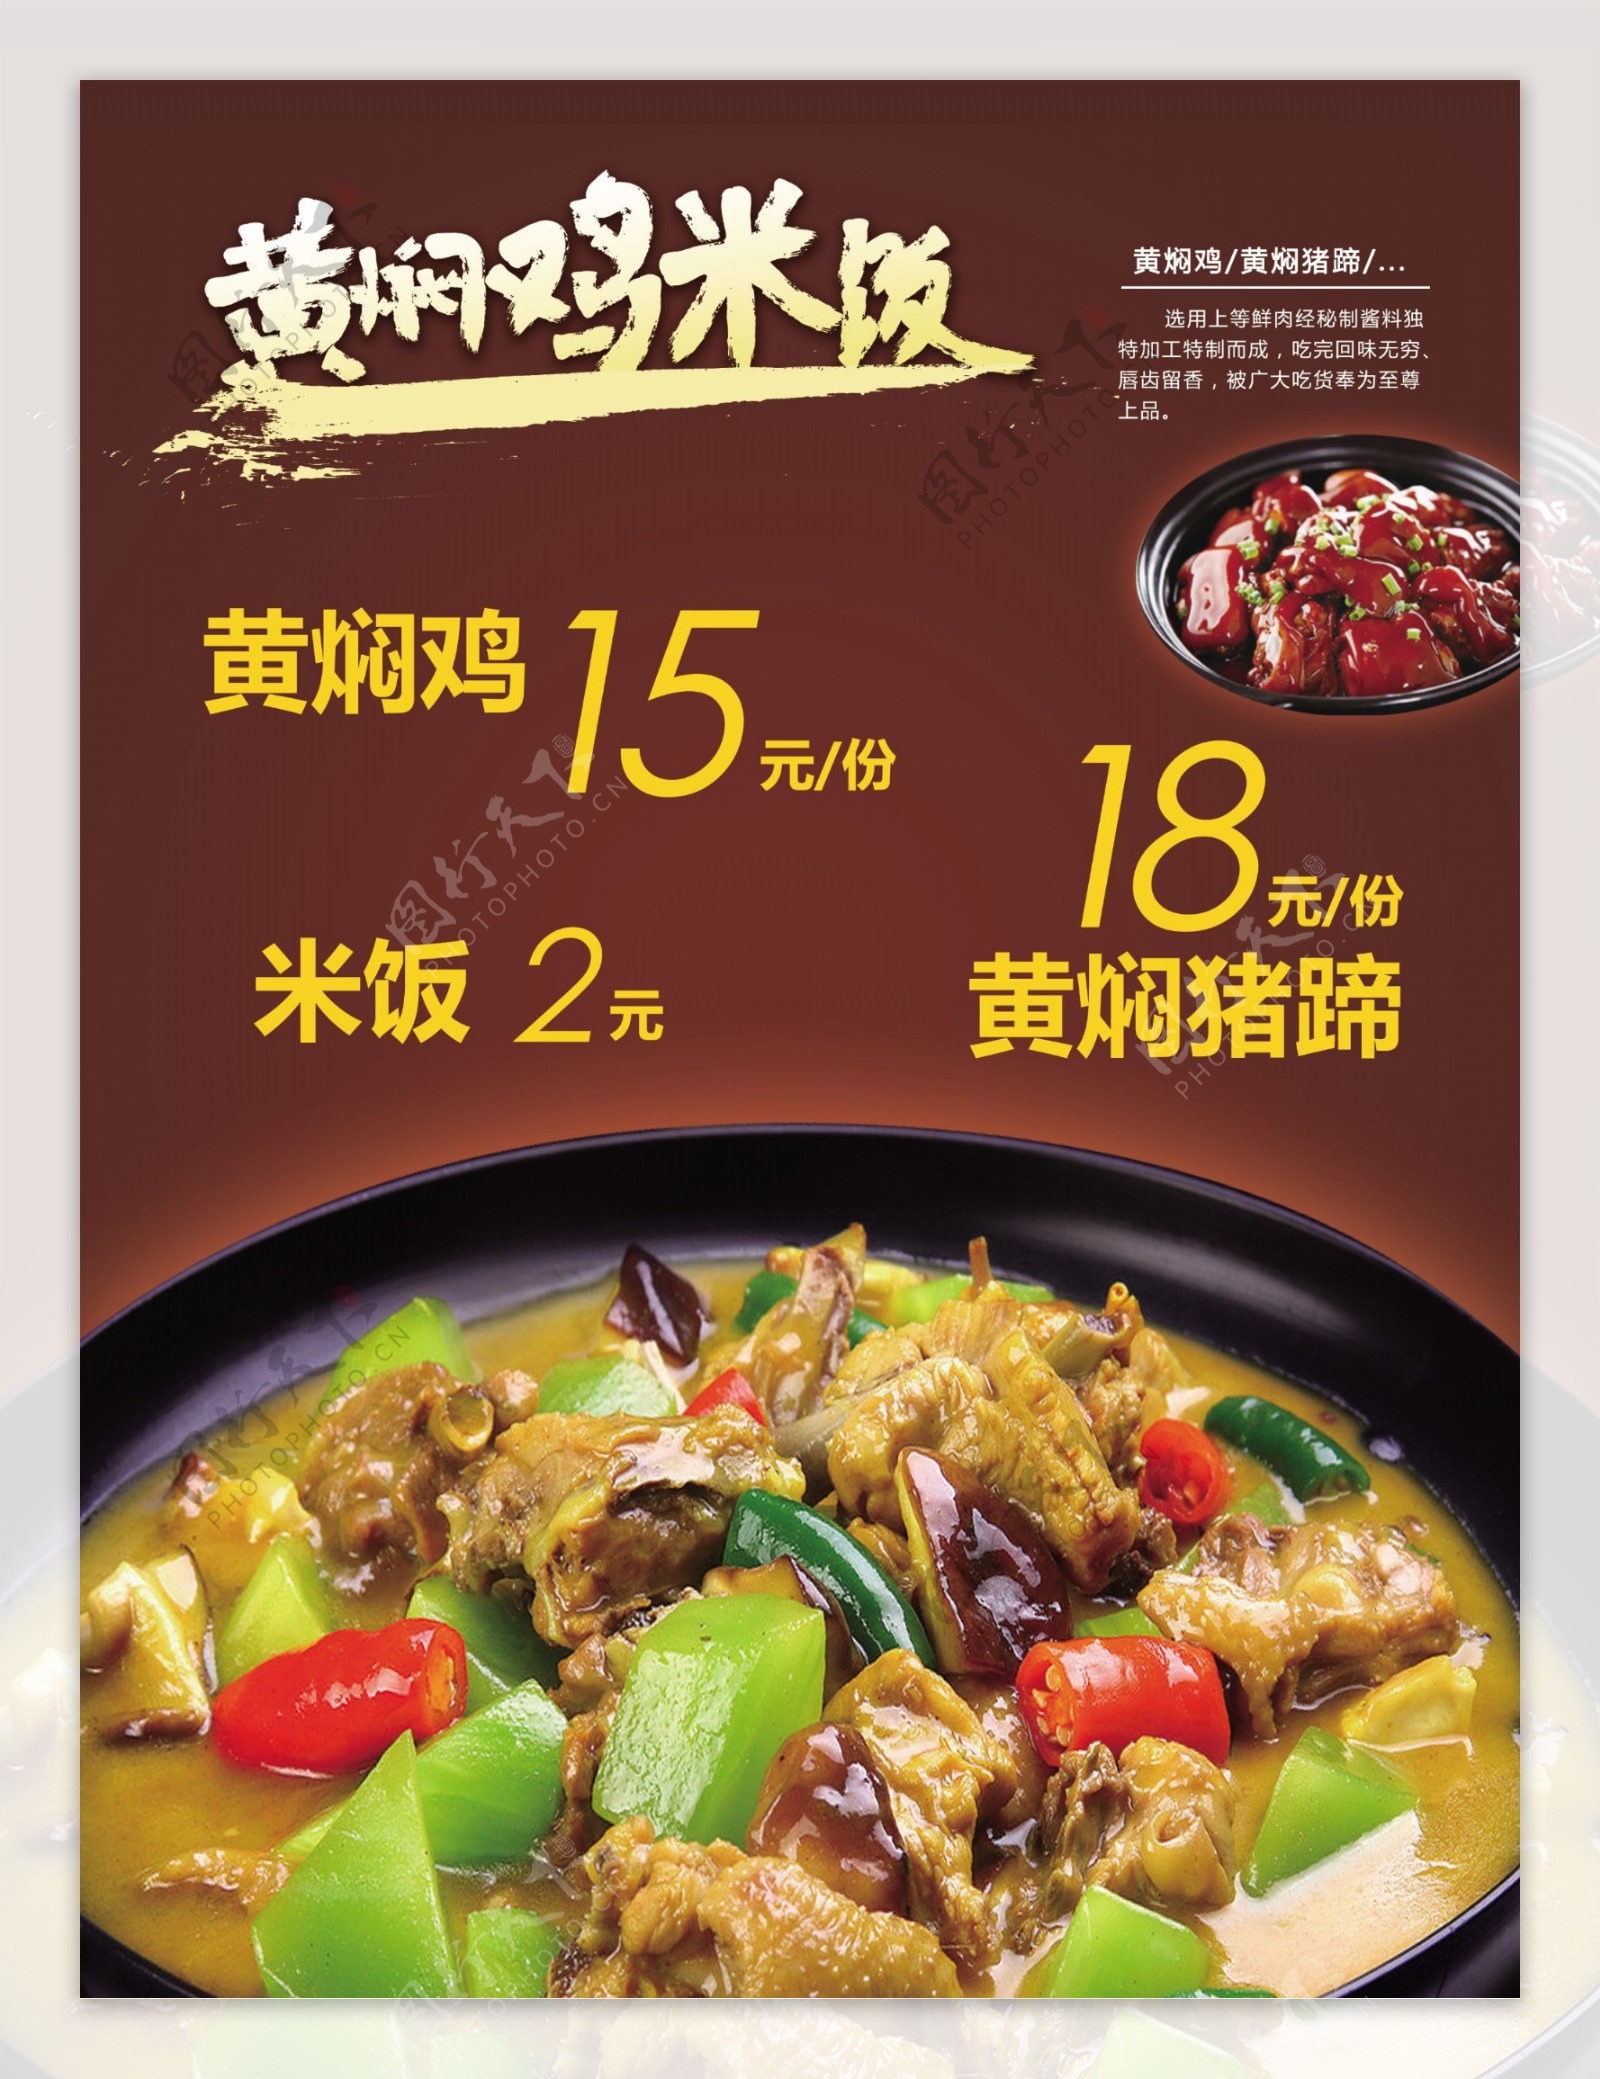 黄焖鸡米饭猪蹄海报菜单展板单页主食砂锅